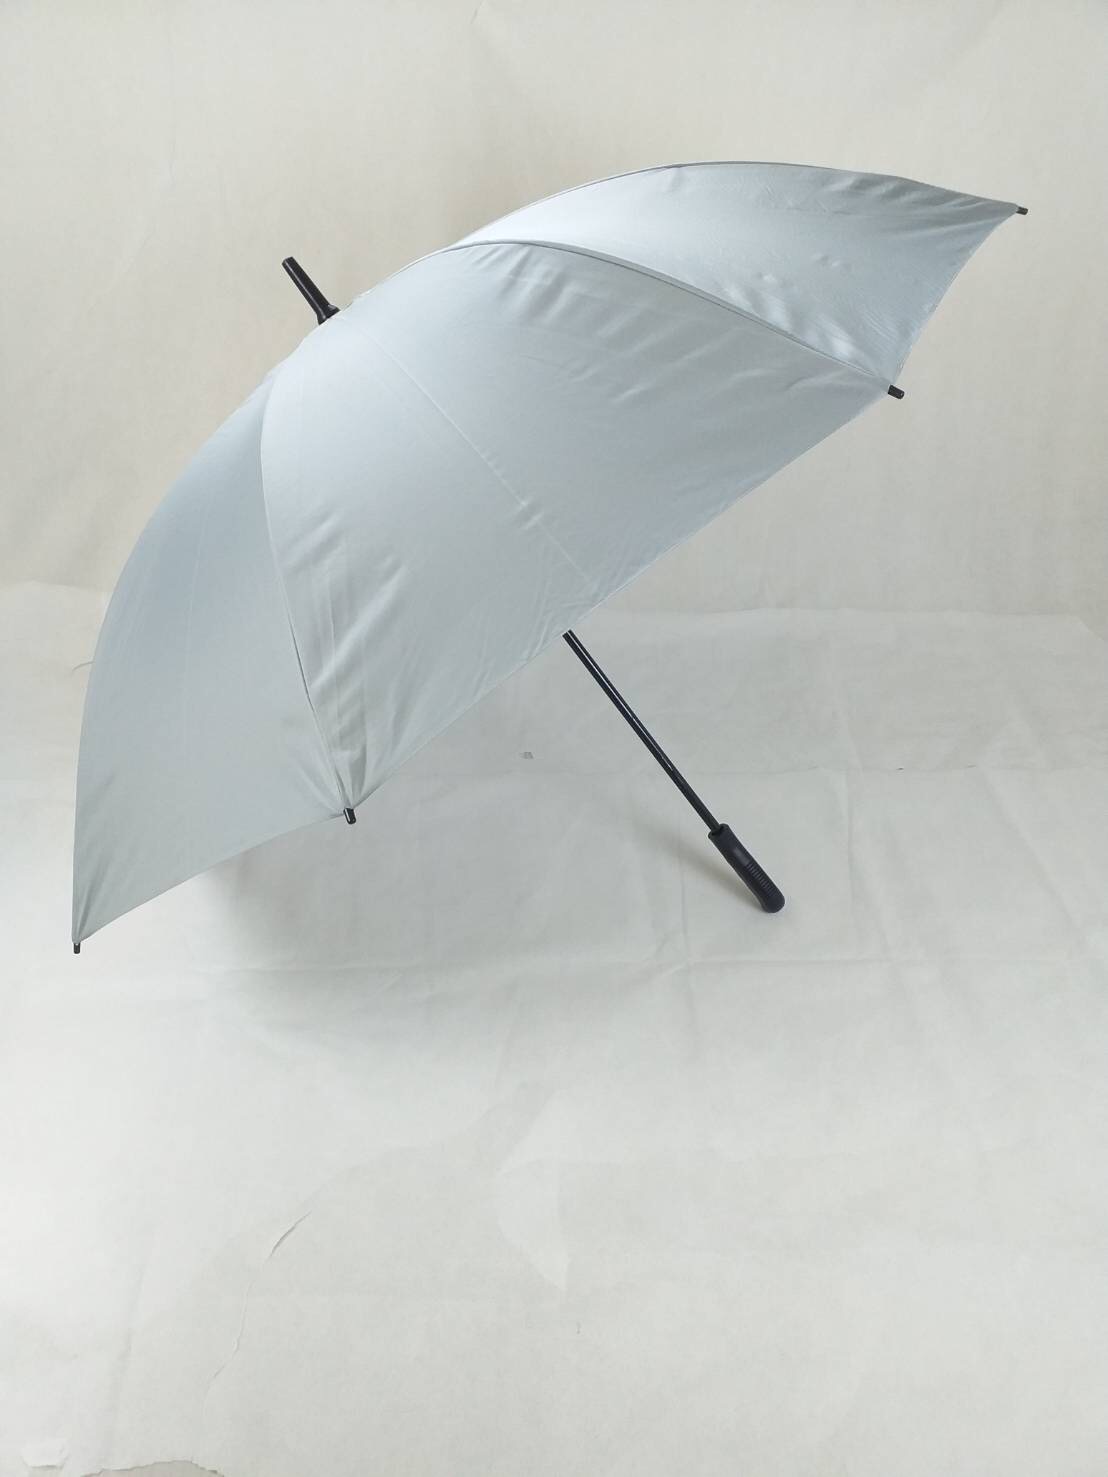 ร่มกอล์ฟ ร่ม 30นิ้ว มือกาง แกนเหล็ก ผ้าสีพื้น ด้ามตรง ร่มกันแดด กันน้ำ ผลิตในไทย golf umbrella  รหัส 30143-1